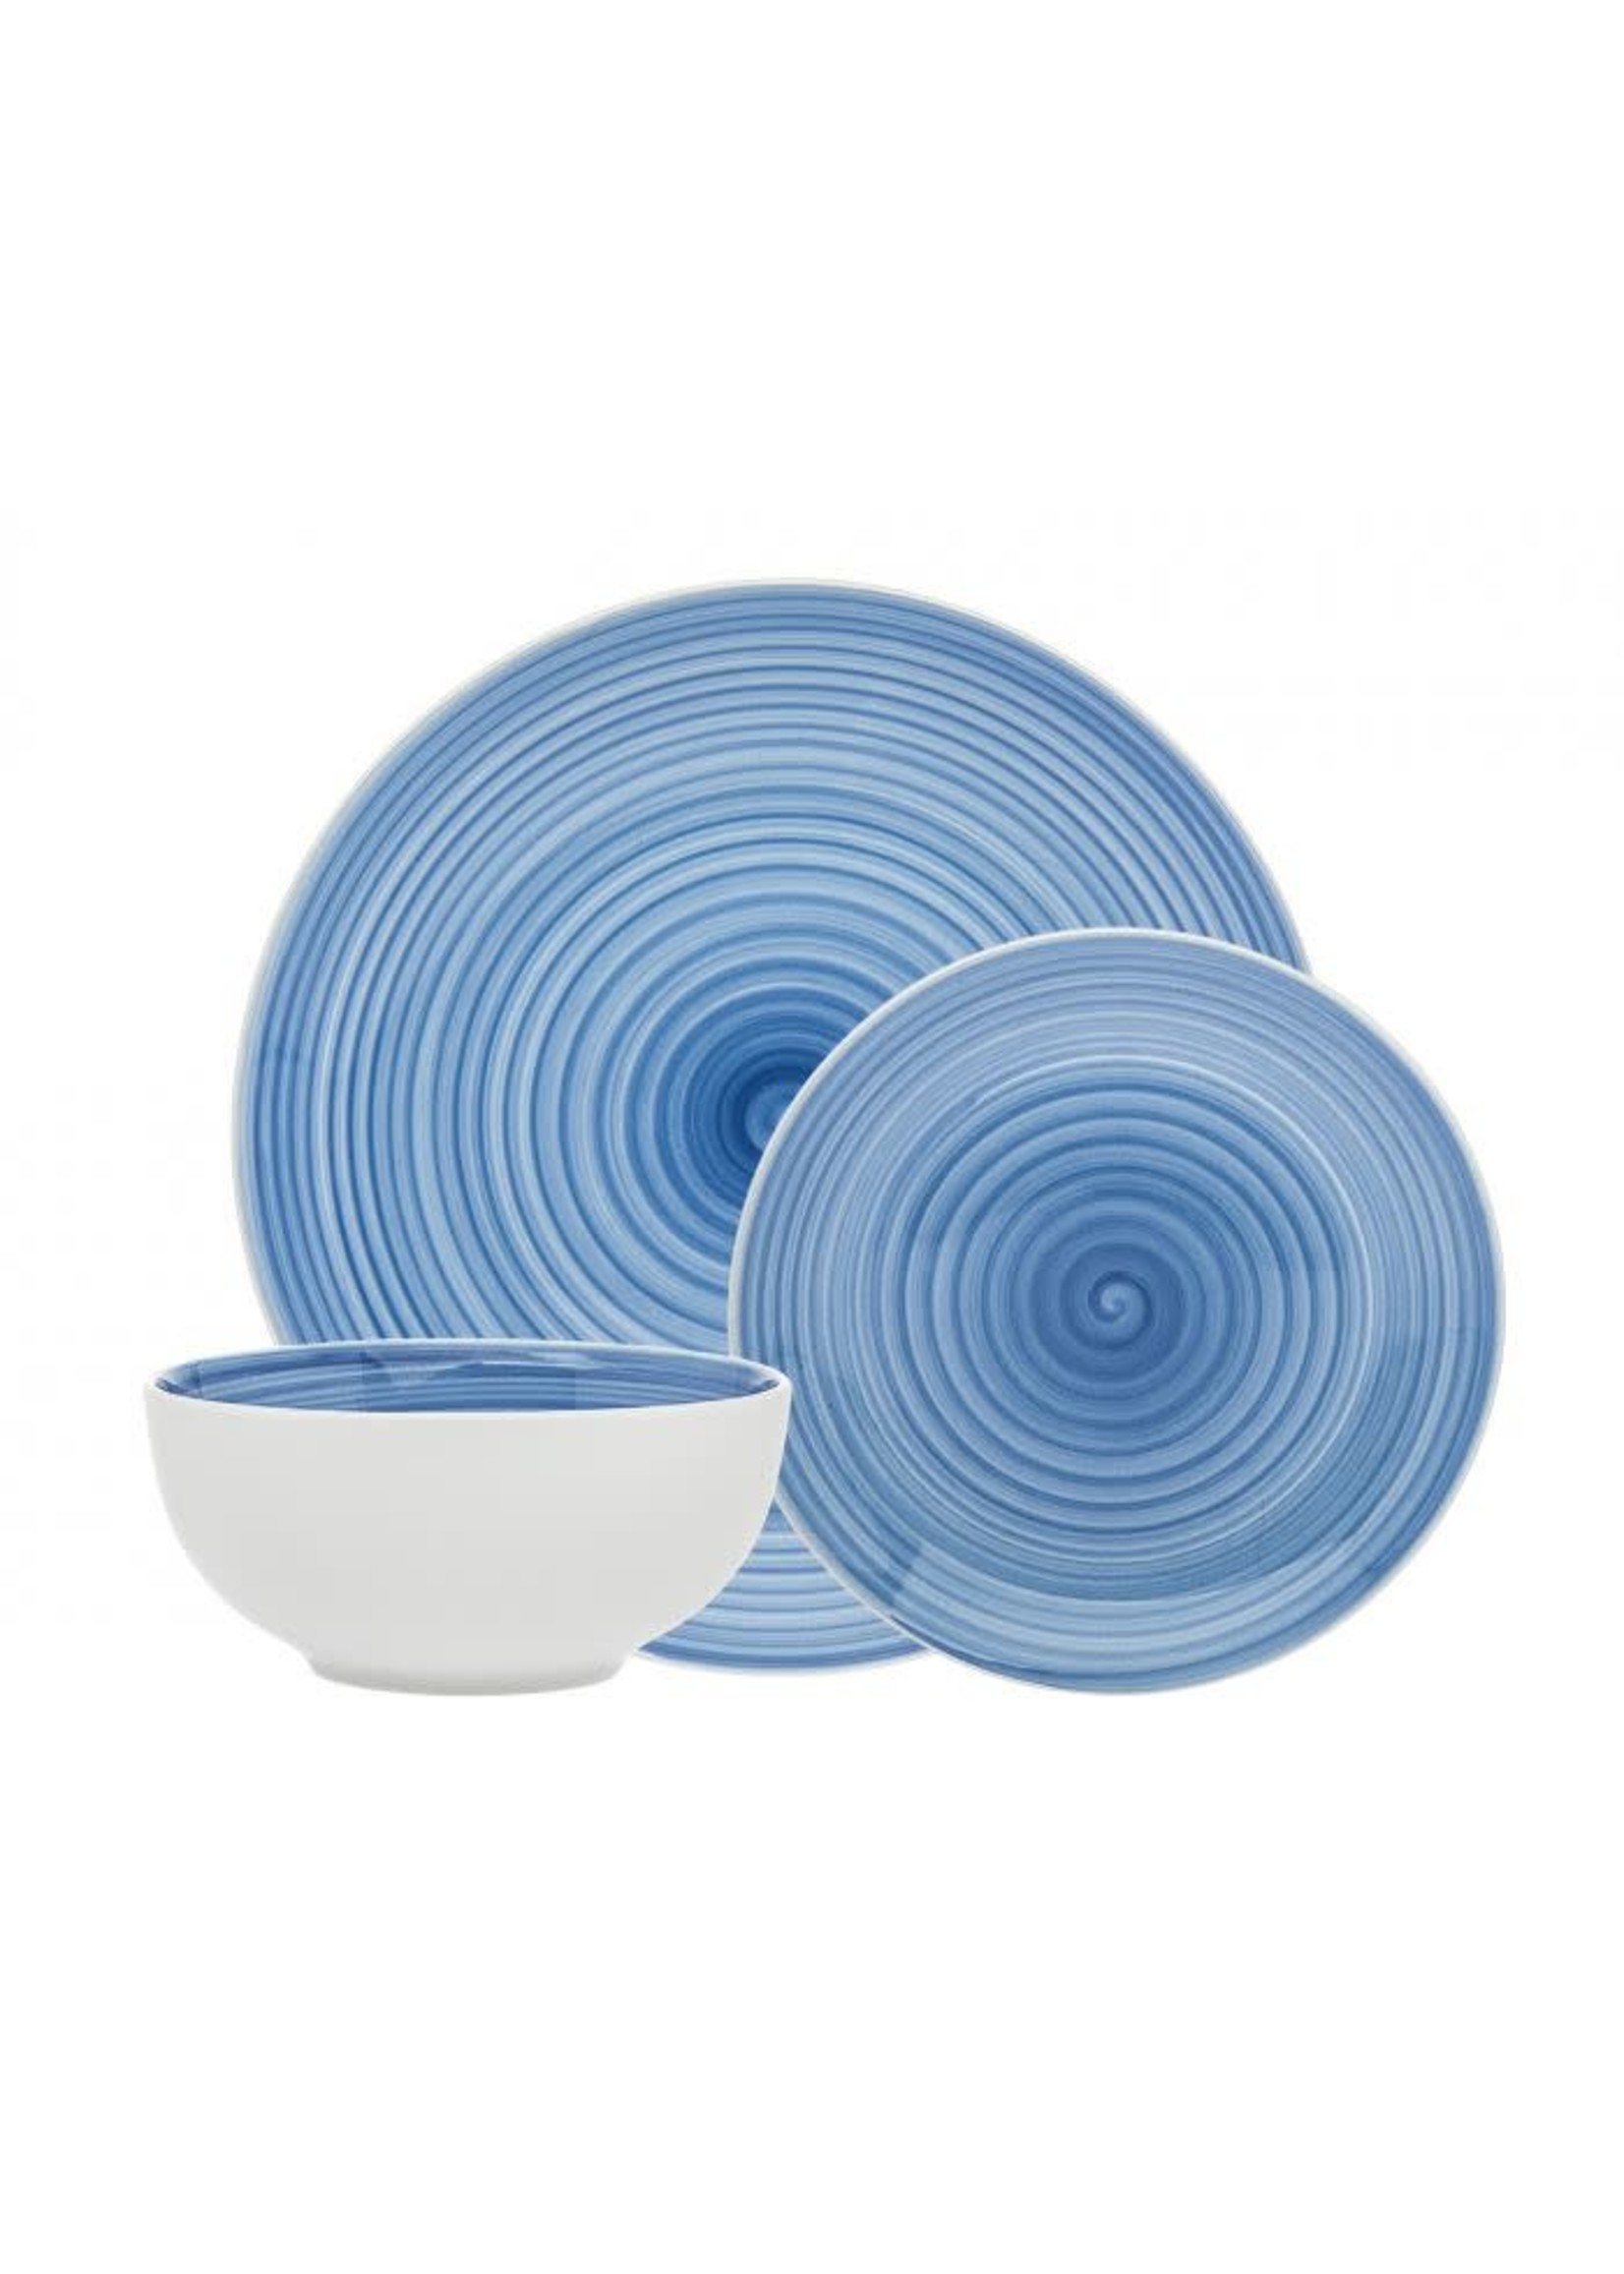 Godinger Silver Co Godinger Gatherings Spiral Blue 12 Pc Porcelain